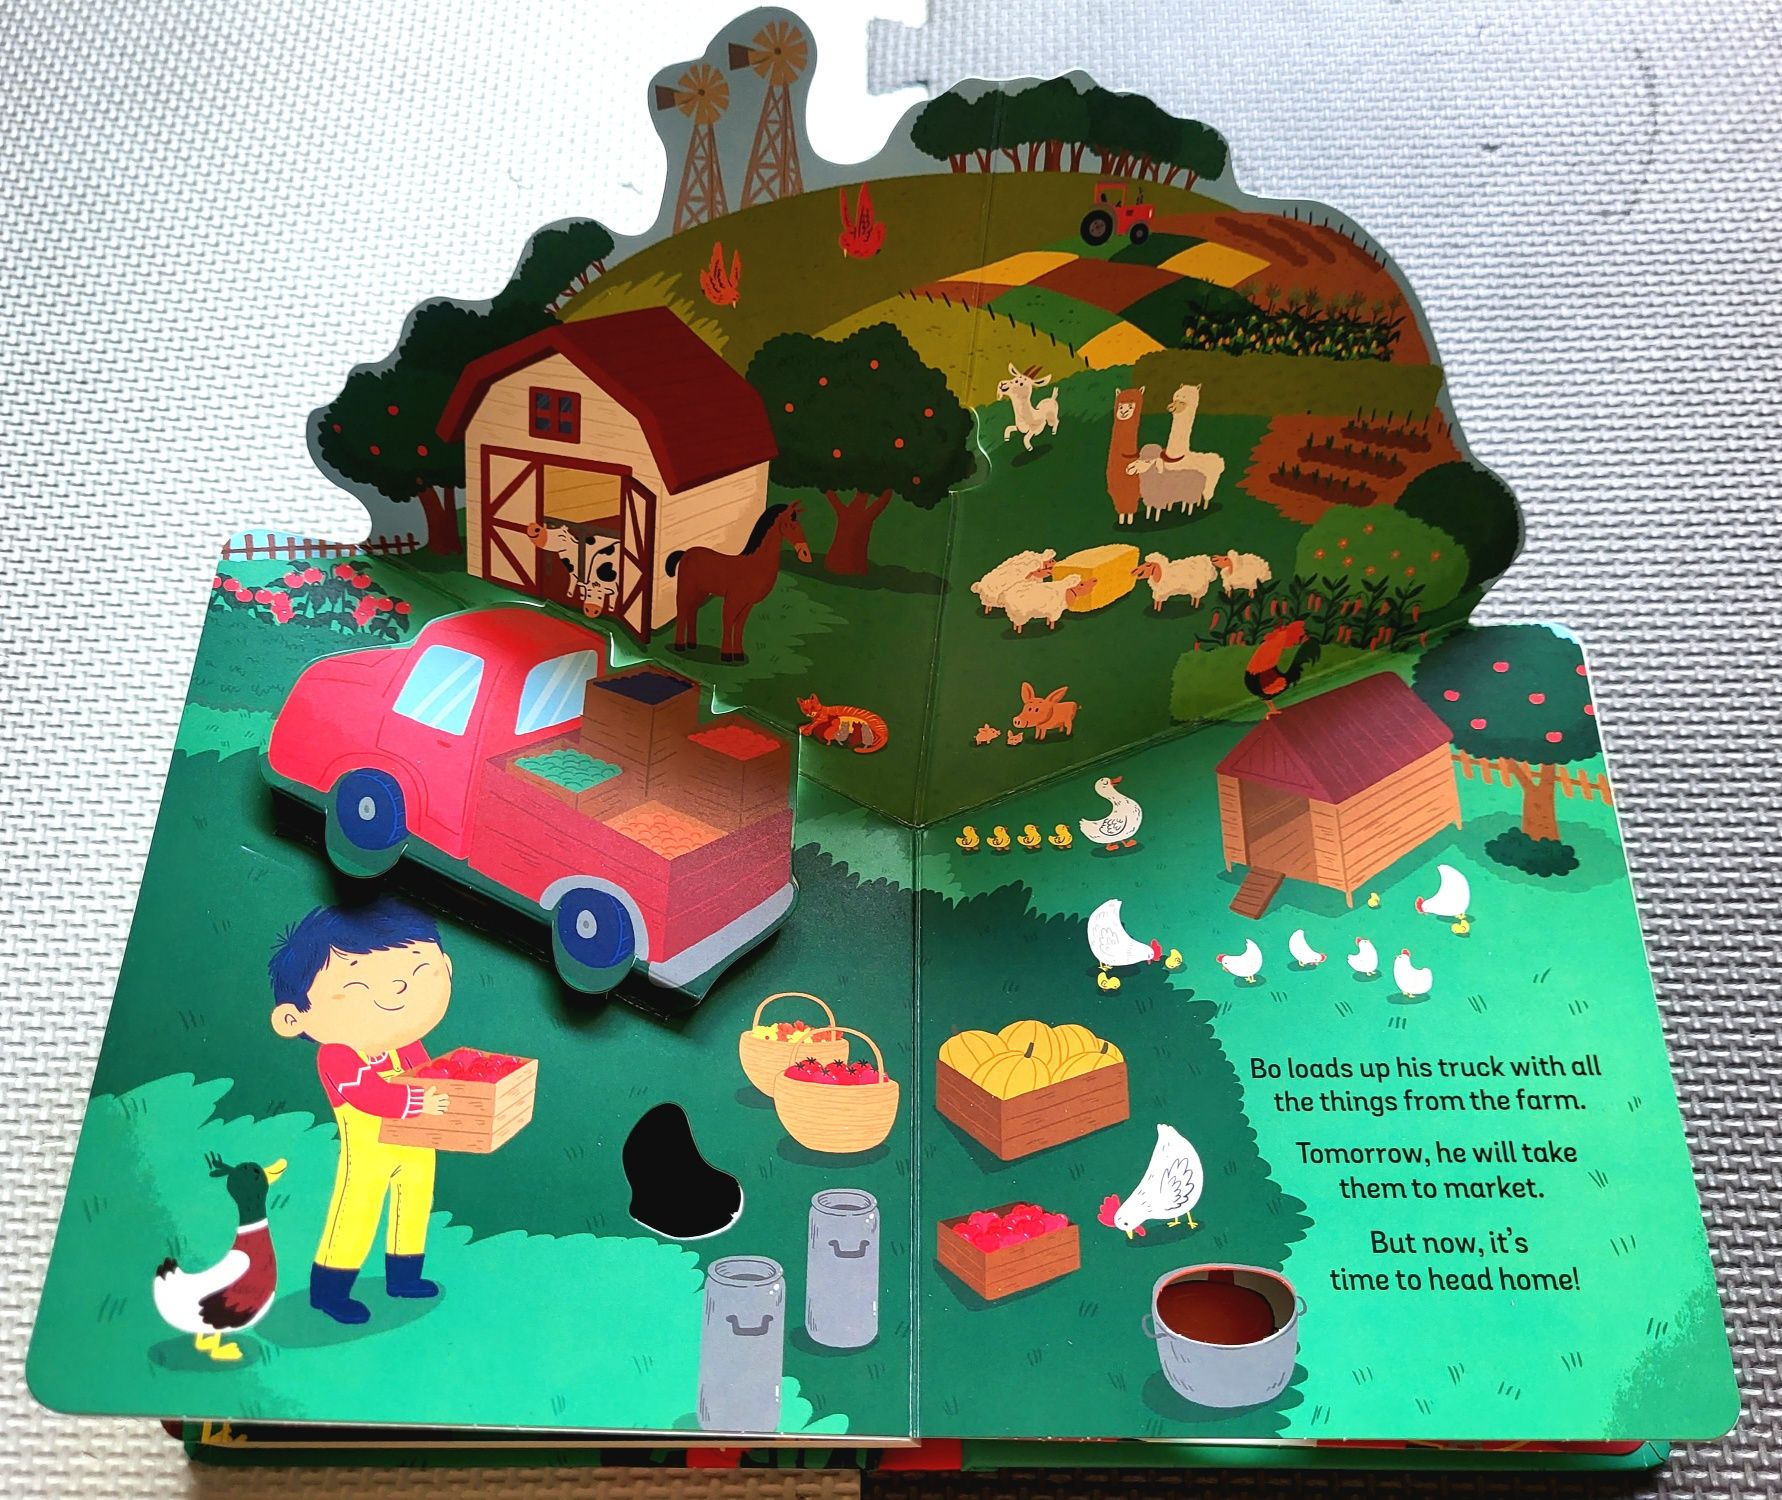 Zoom Farm Adventure czytanka po angielsku zwierzęta na wsi